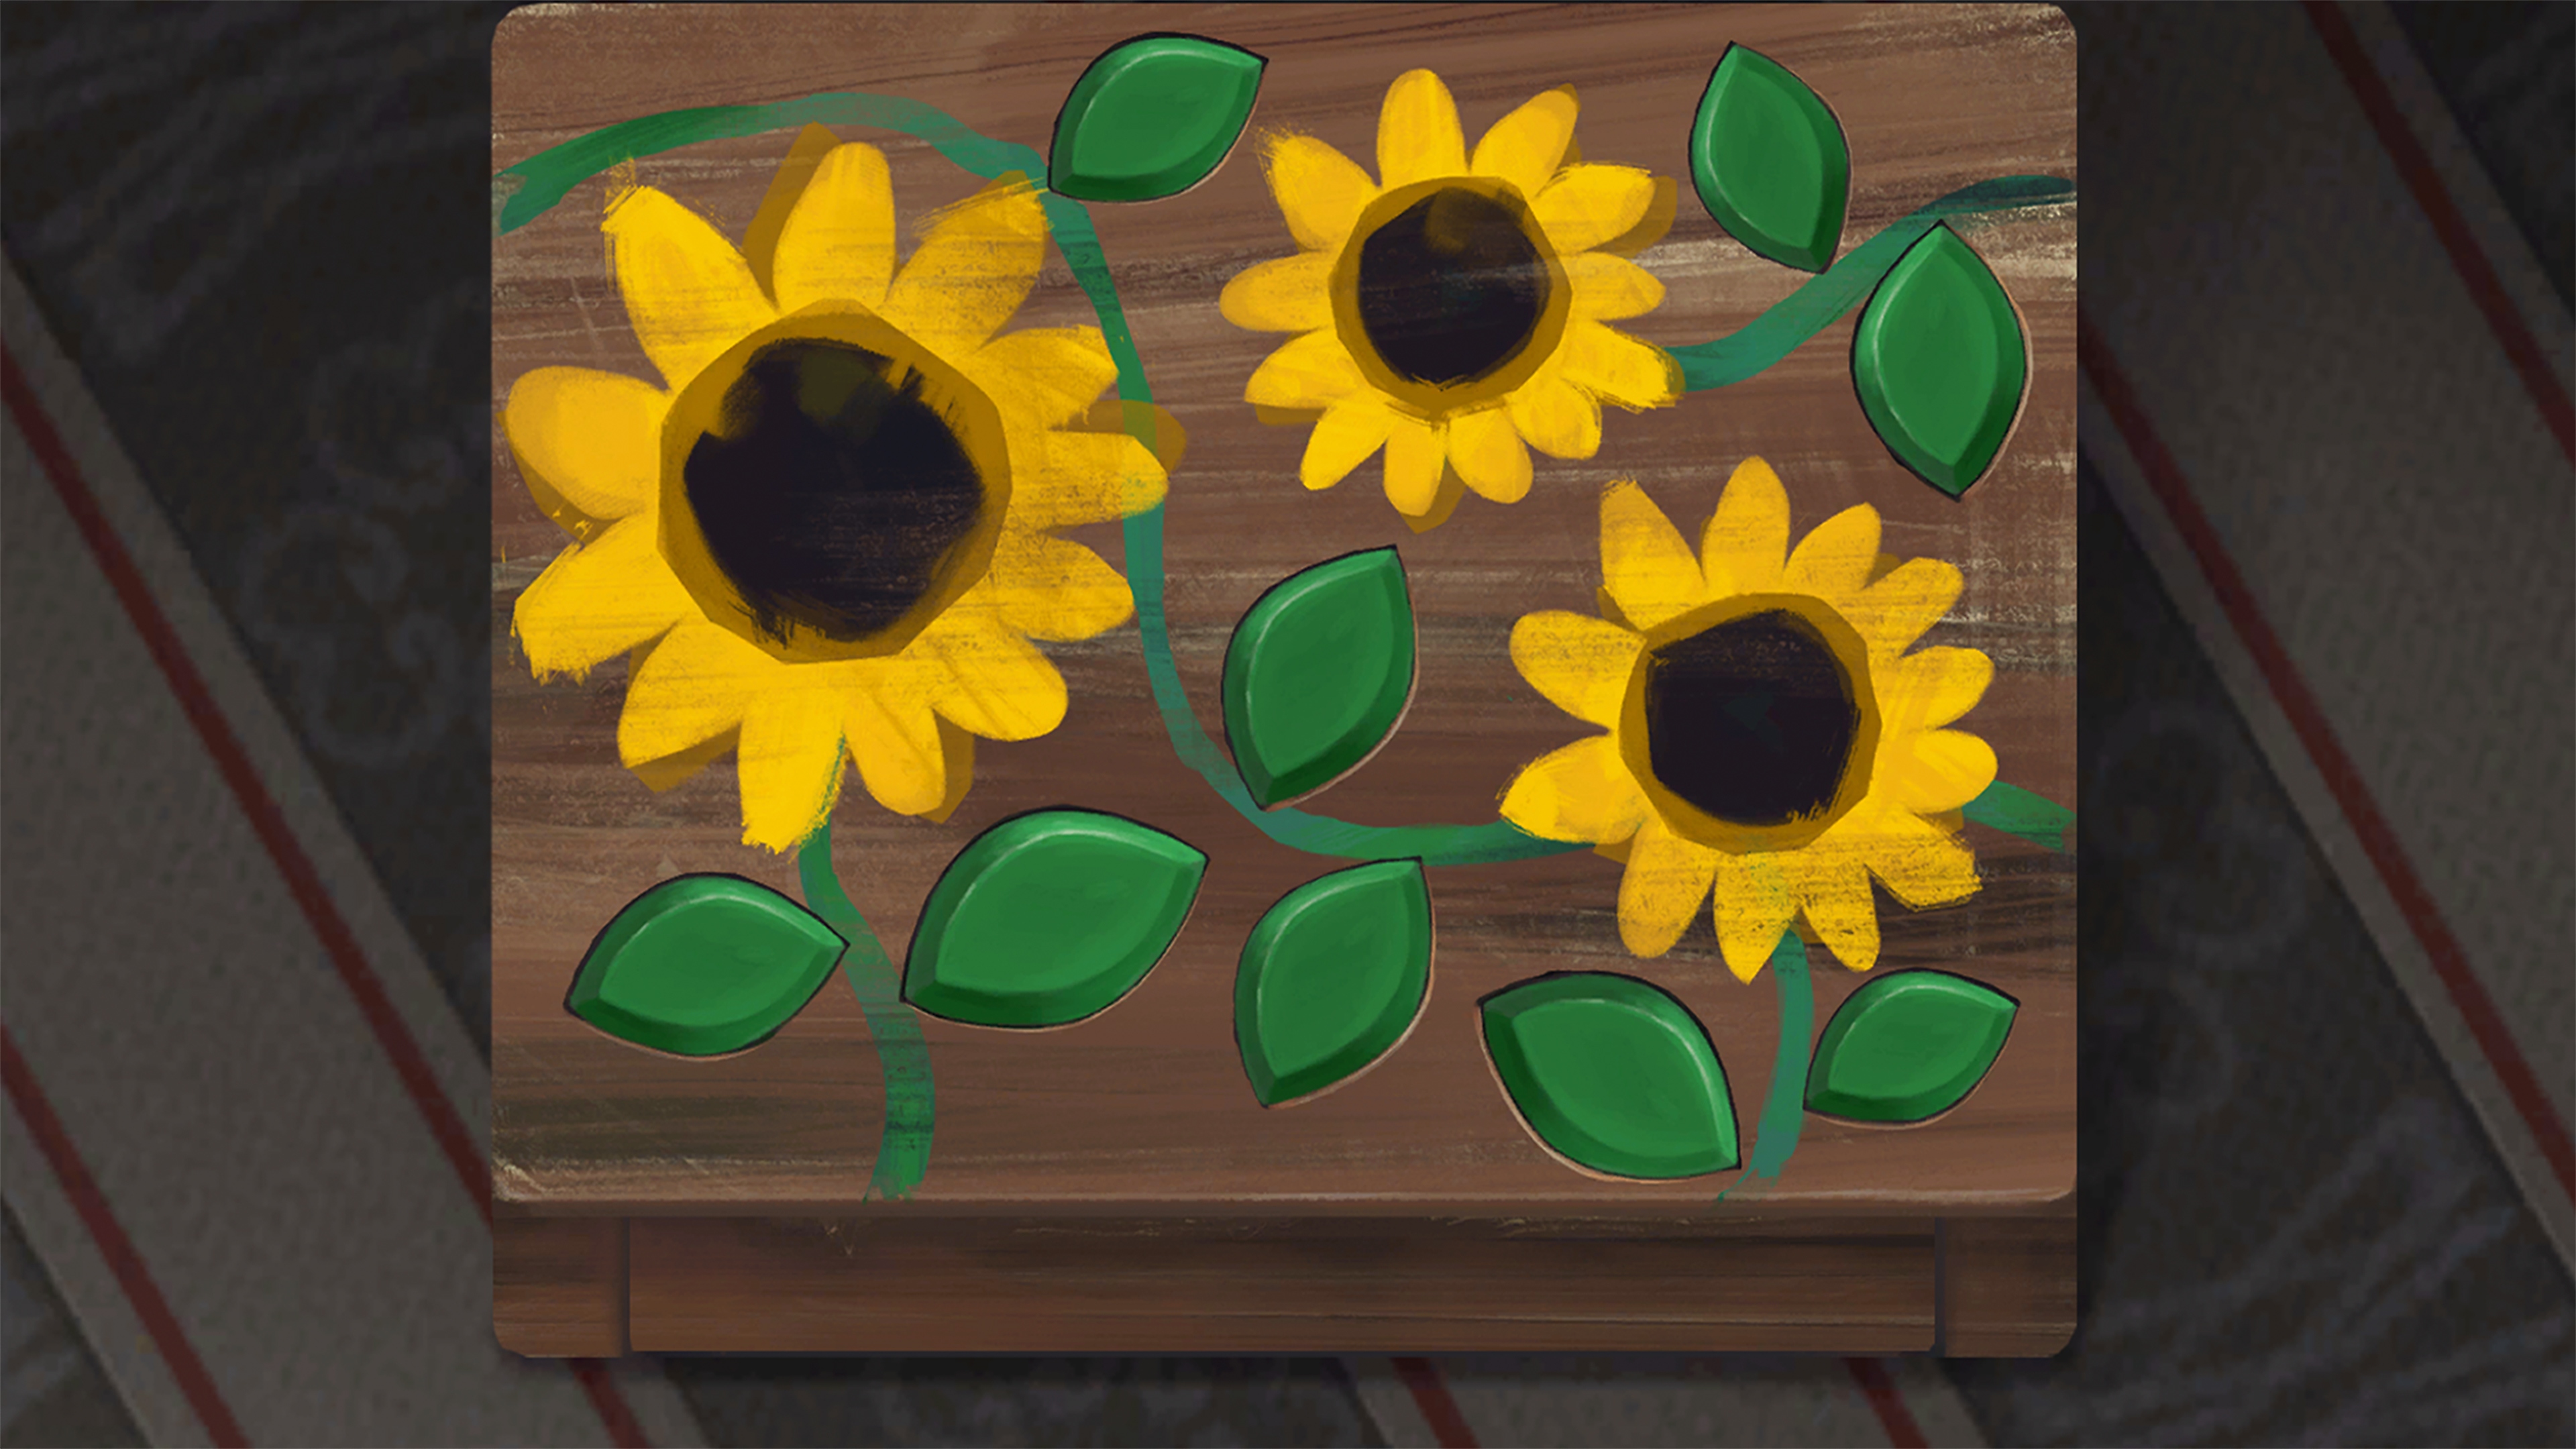 Behind the Frame: The Finest Scenery screenshot met daarop een schilderij met zonnebloemen